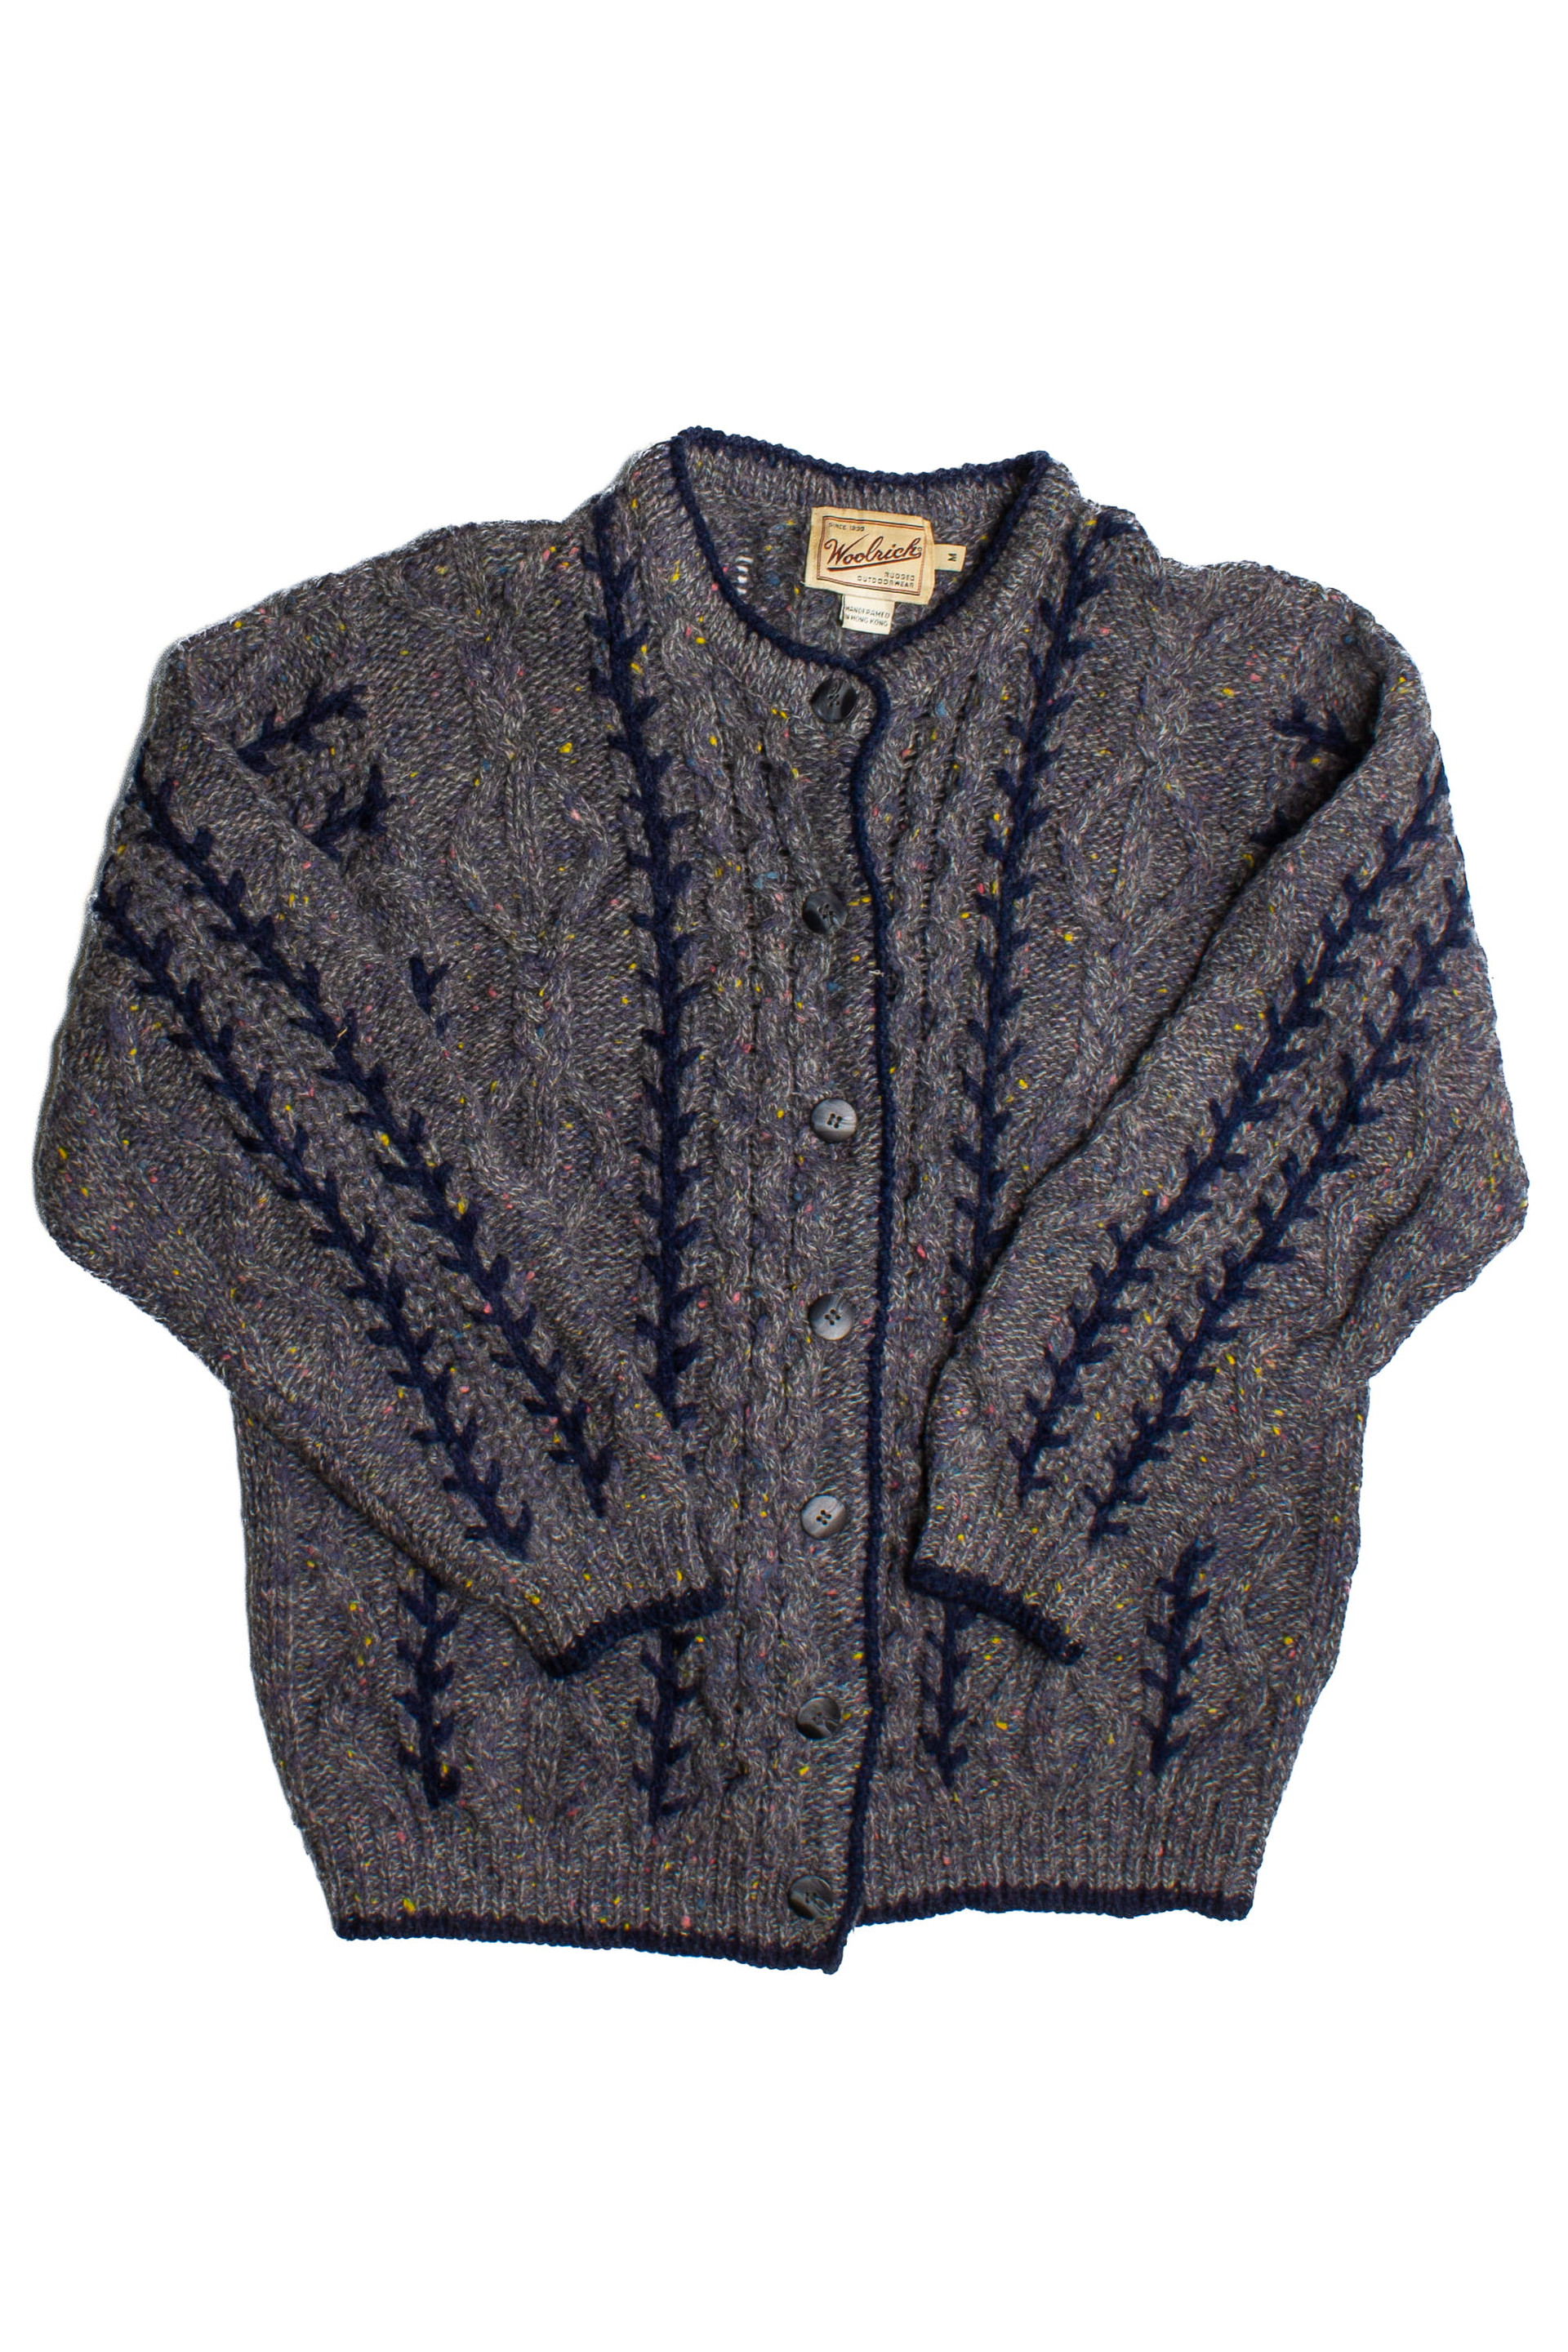 Gaeltarra Irish Fisherman Sweater 579 - Ragstock.com